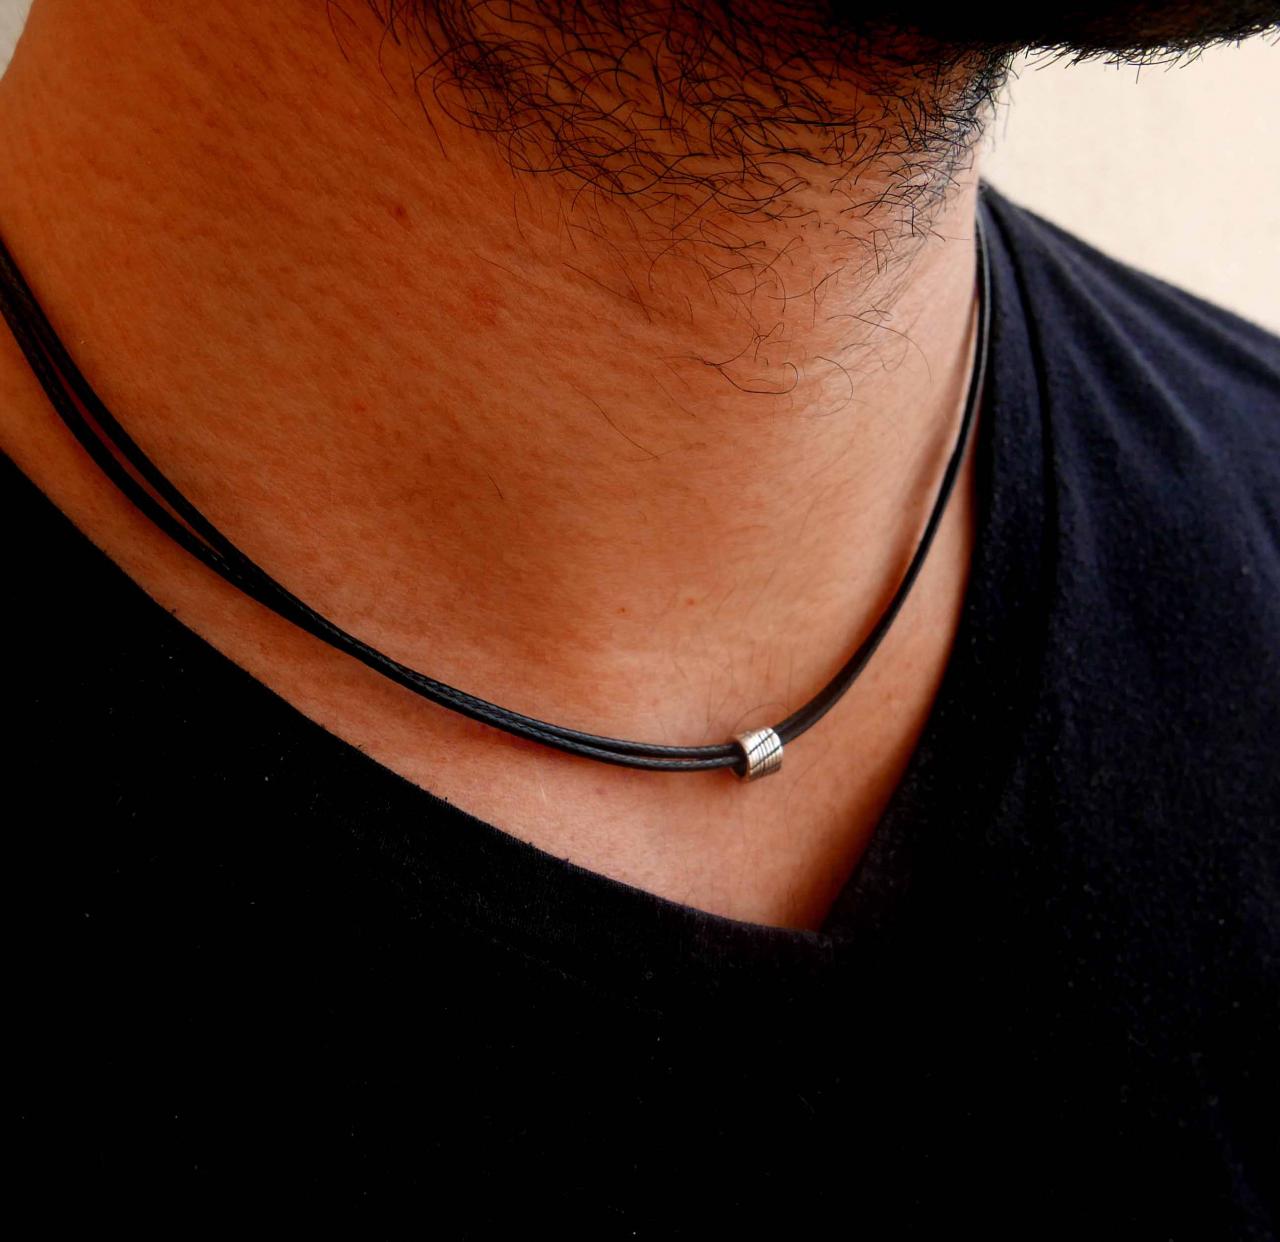 Men's Necklace - Men's Bead Necklace - Men's Silver Necklace - Mens Jewelry - Necklaces For Men - Jewelry For Men -